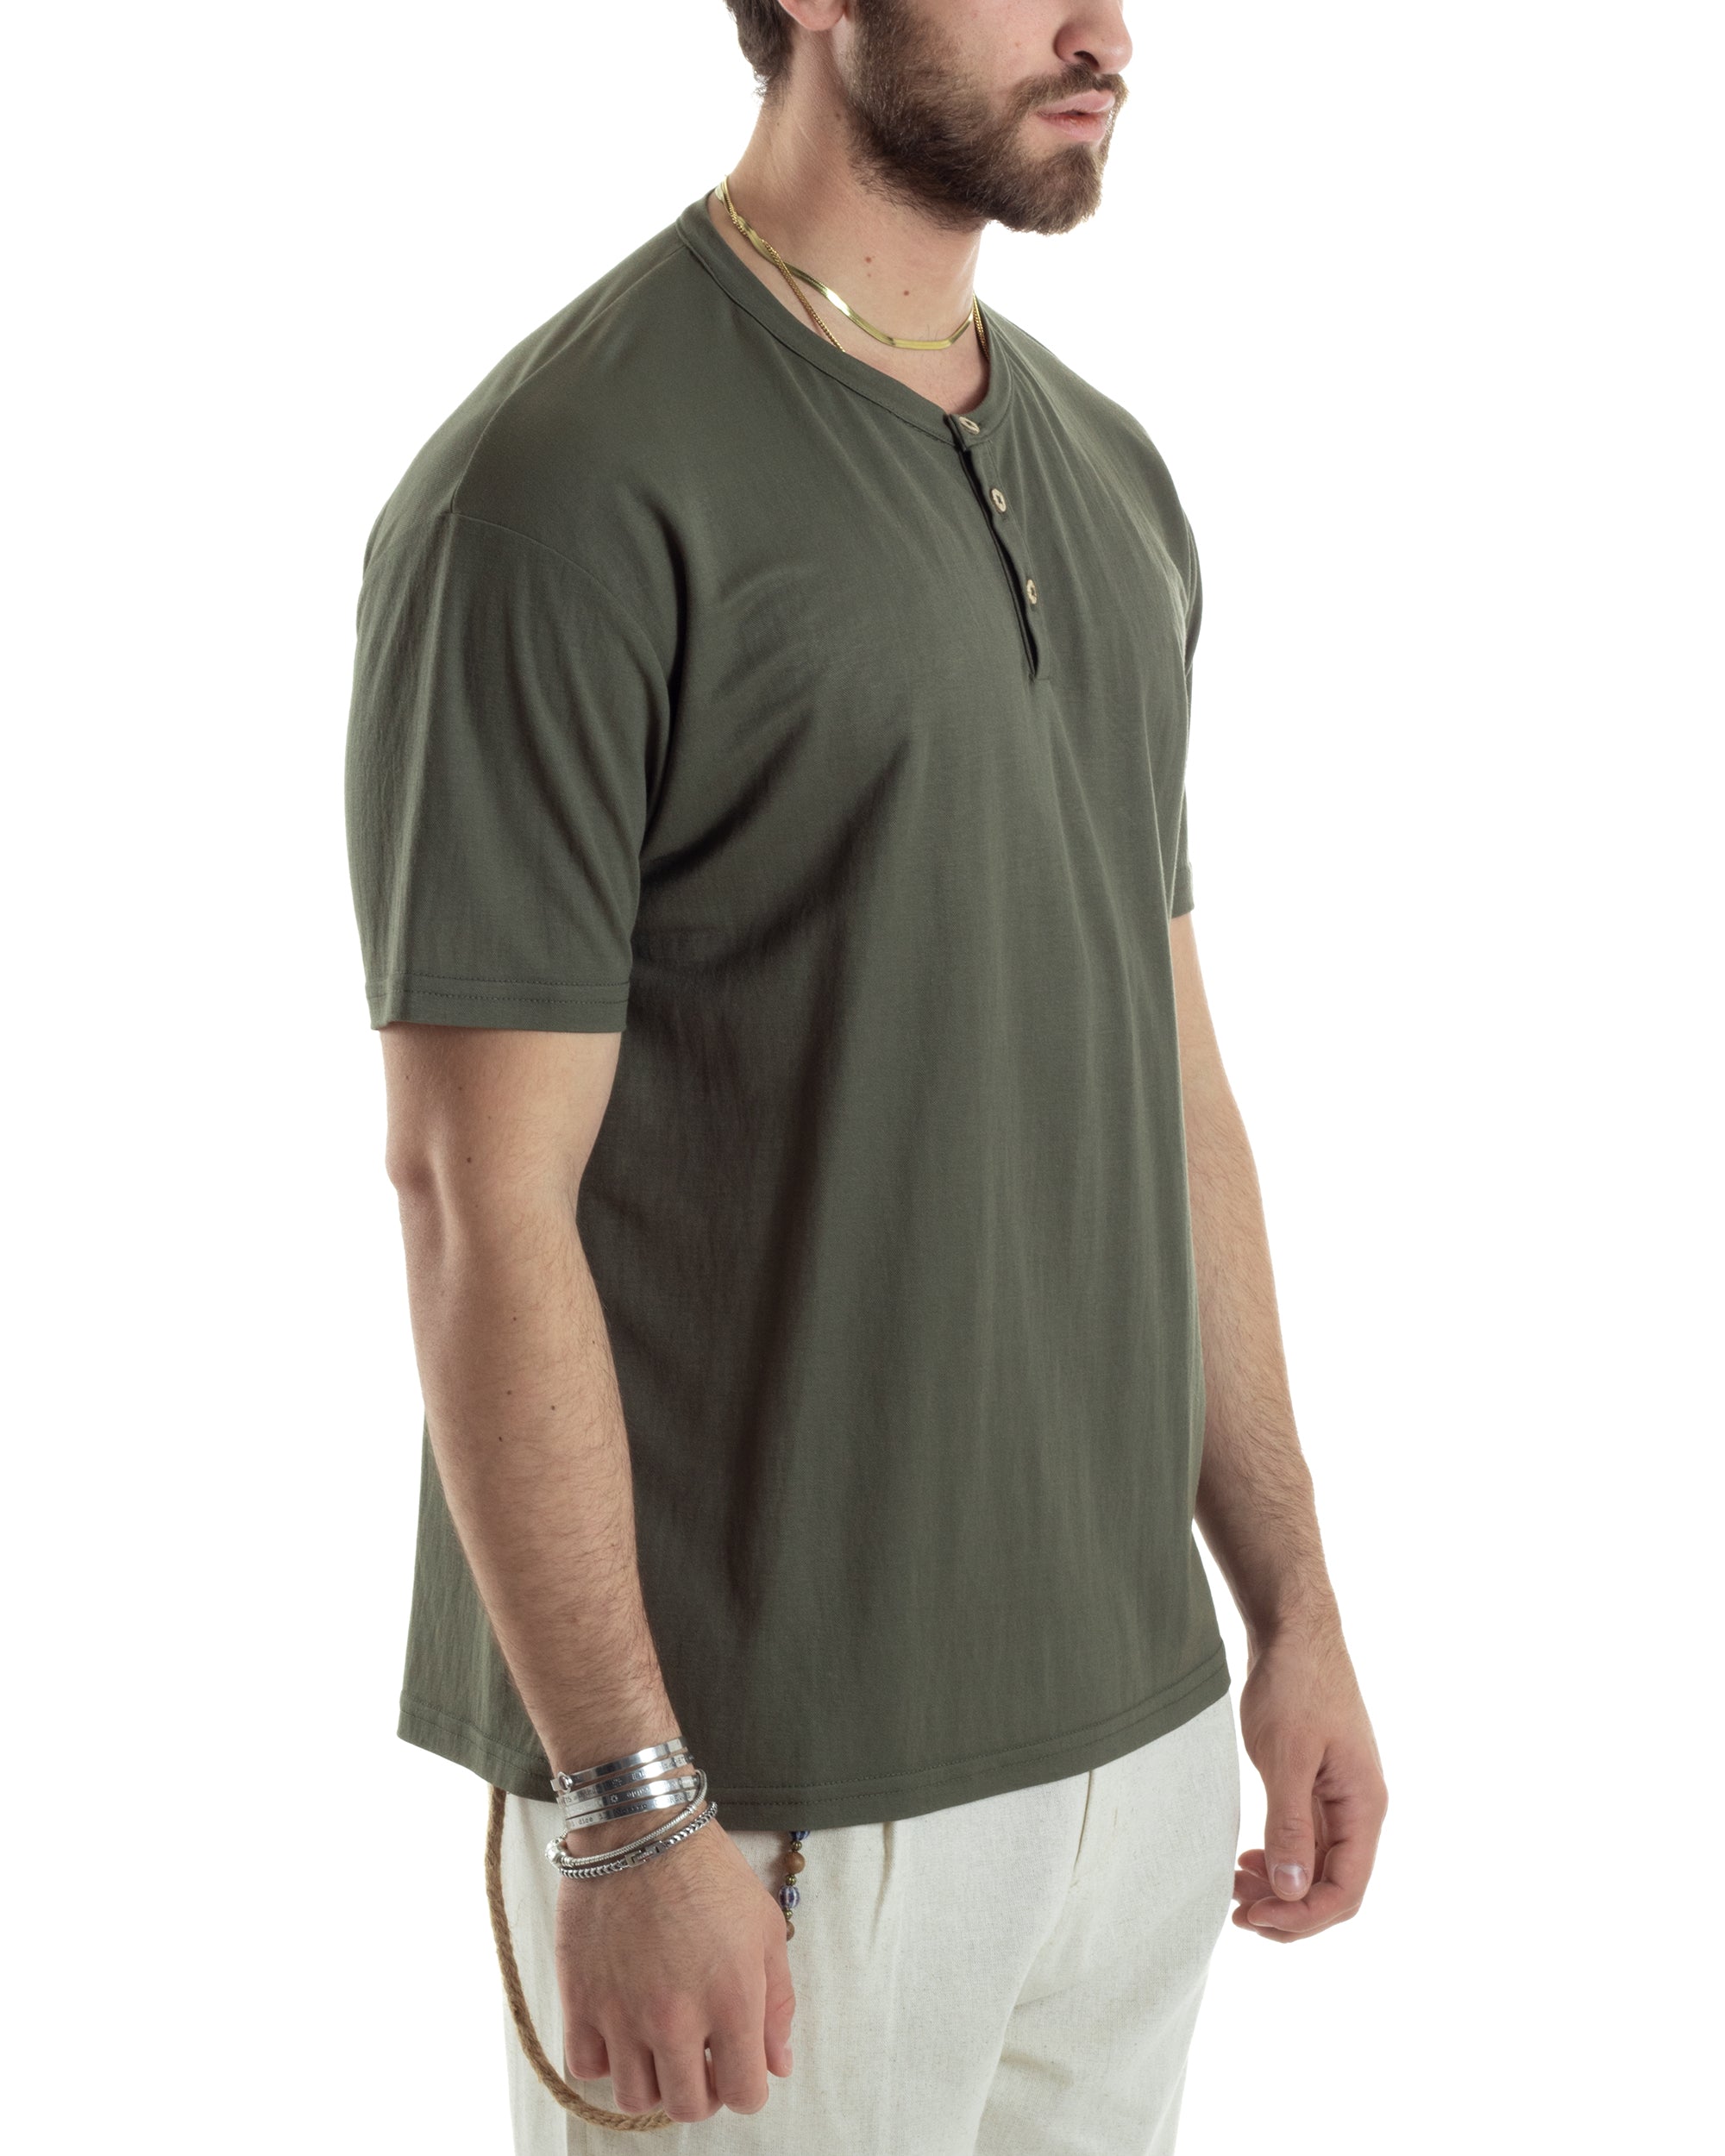 T-shirt Uomo Manica Corta Viscosa Collo Serafino Maglia Con Bottoni Casual Verde GIOSAL-TS3040A